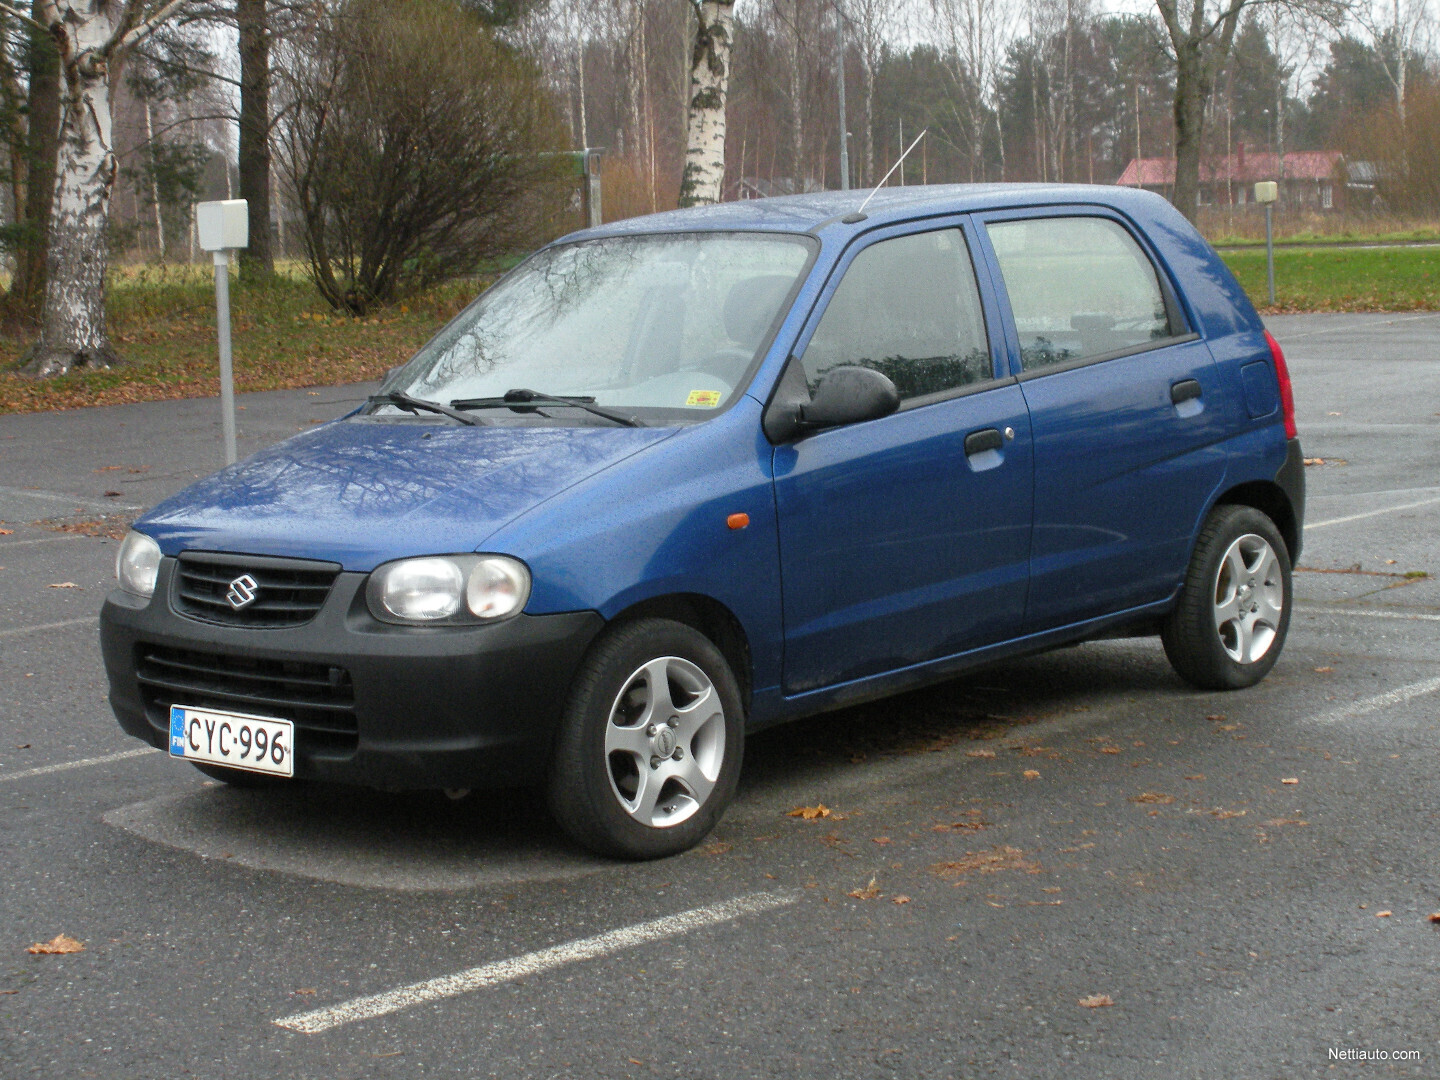 Suzuki Alto 1.1 STD 5d Hatchback 2004 - Used vehicle - Nettiauto